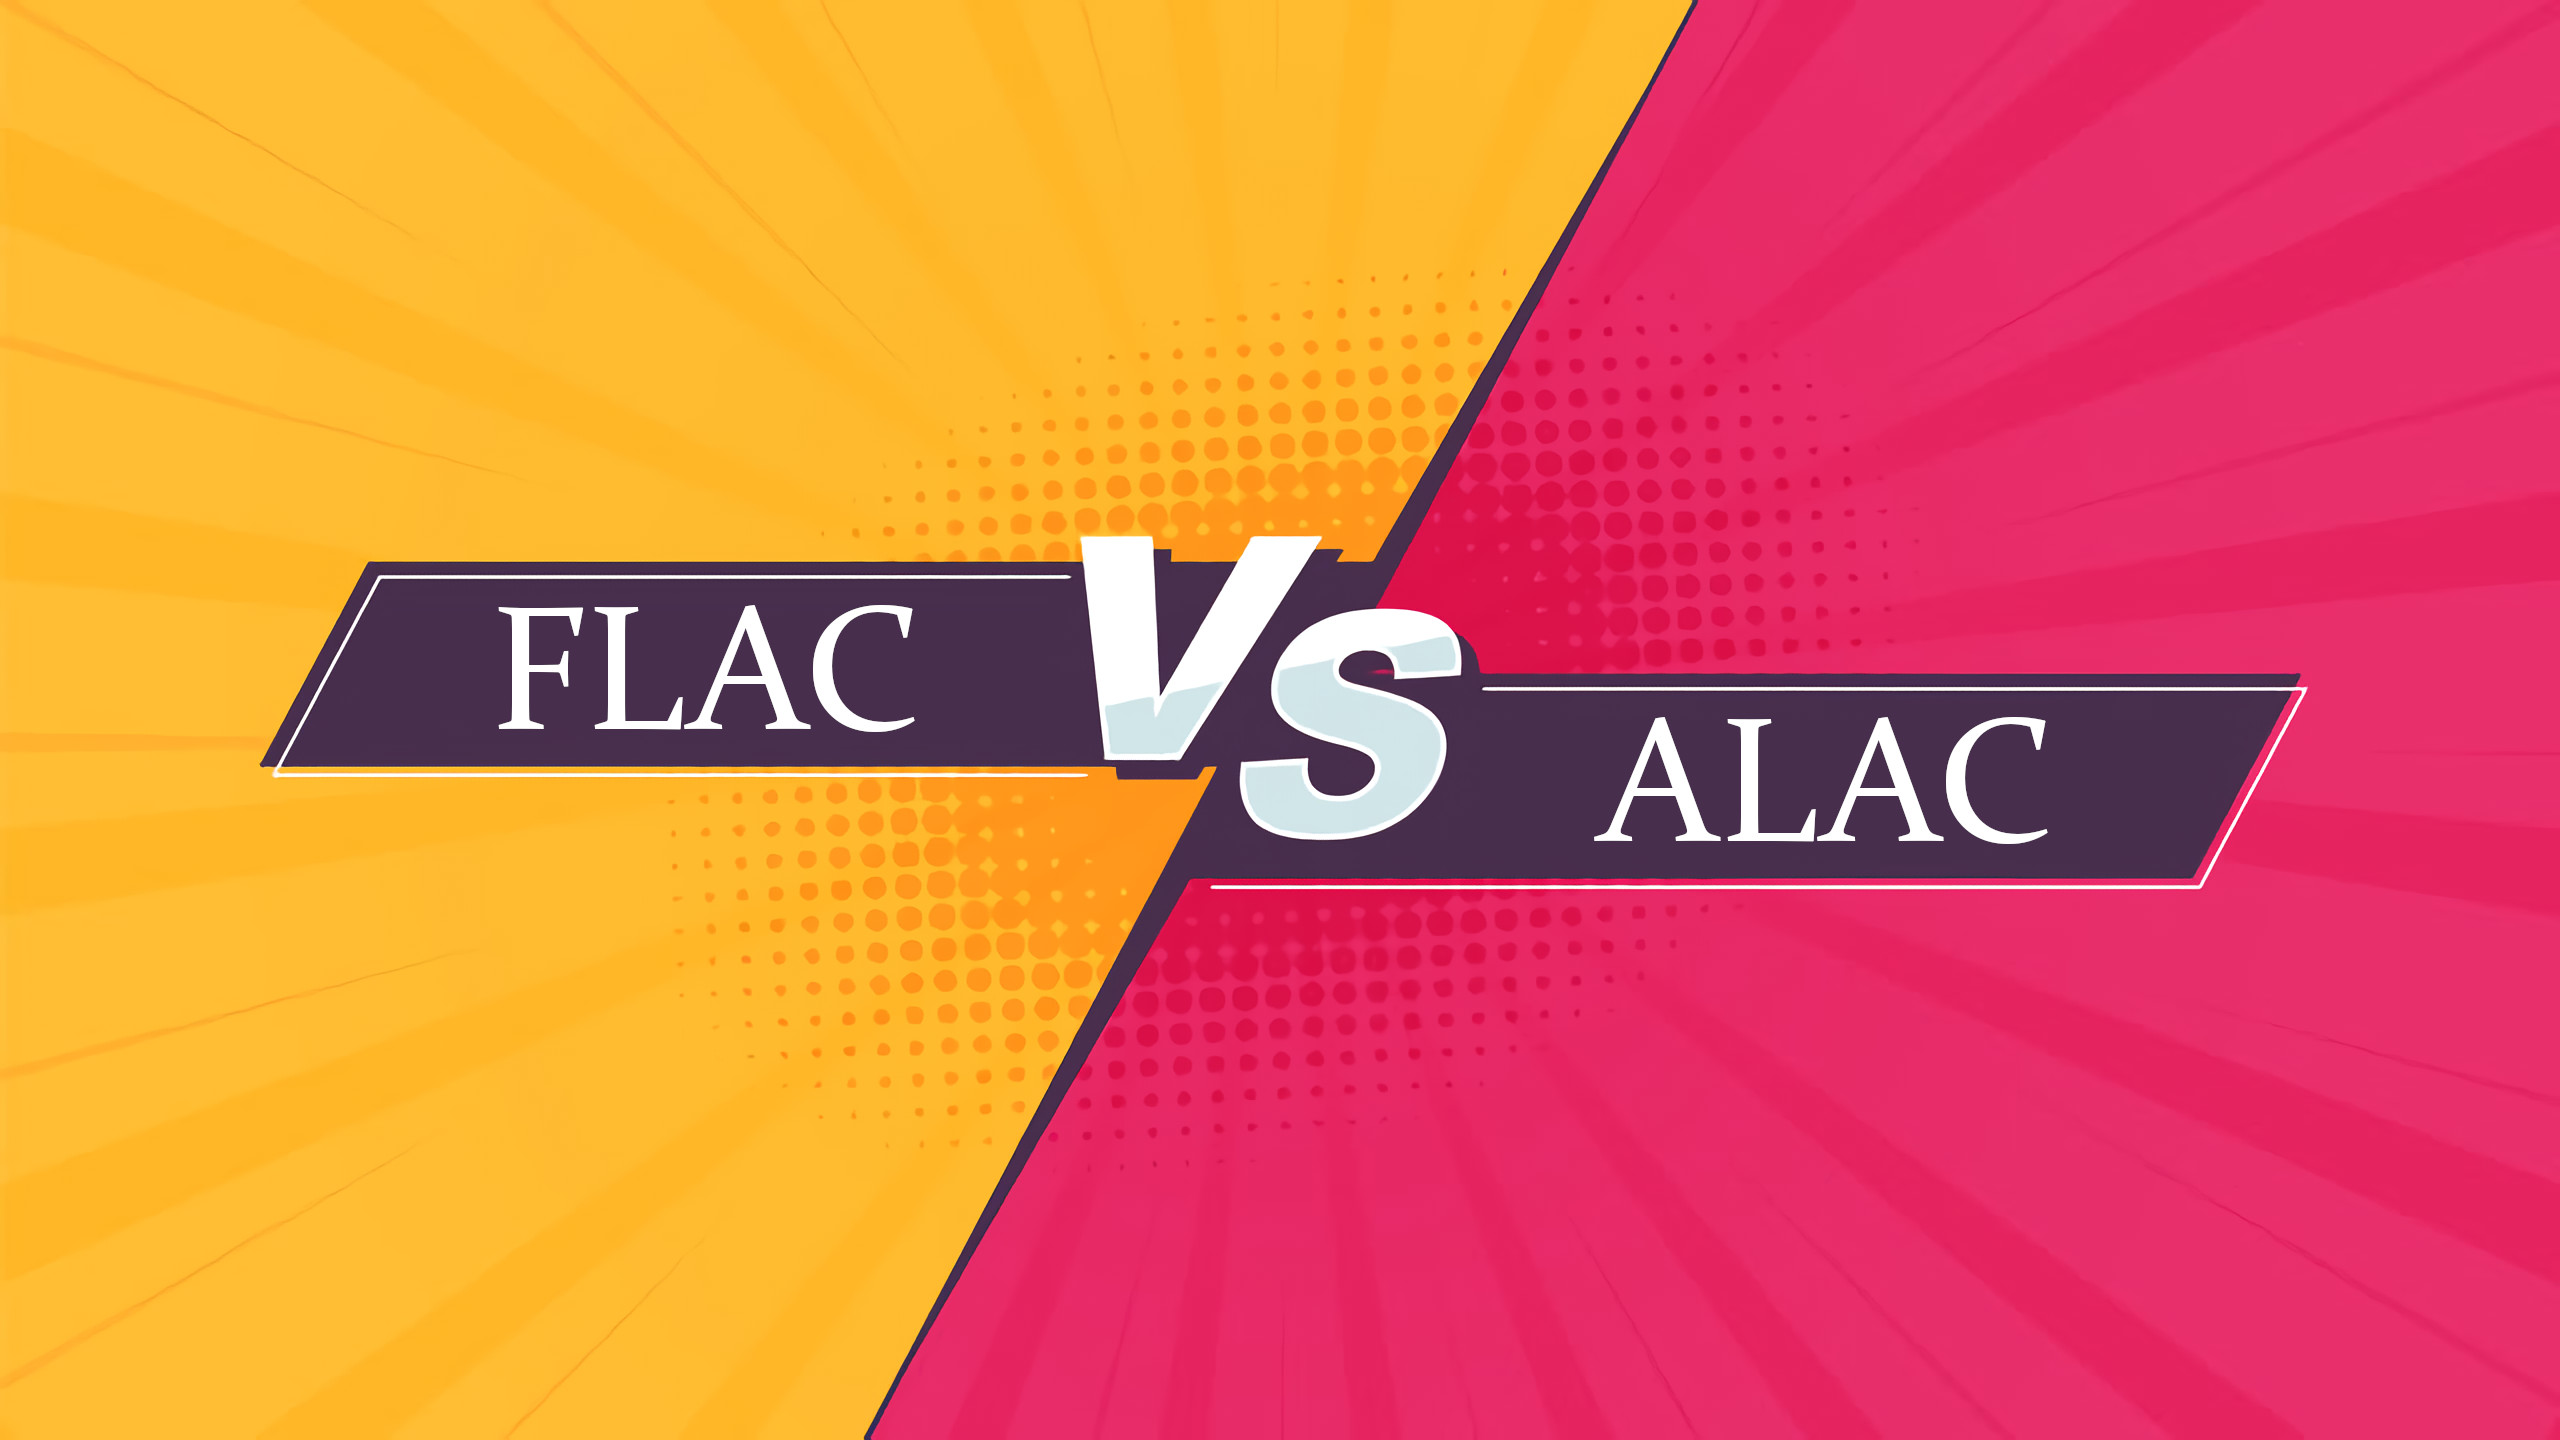 diferença entre flac e alac, flac vs alac, comparação flac e alac